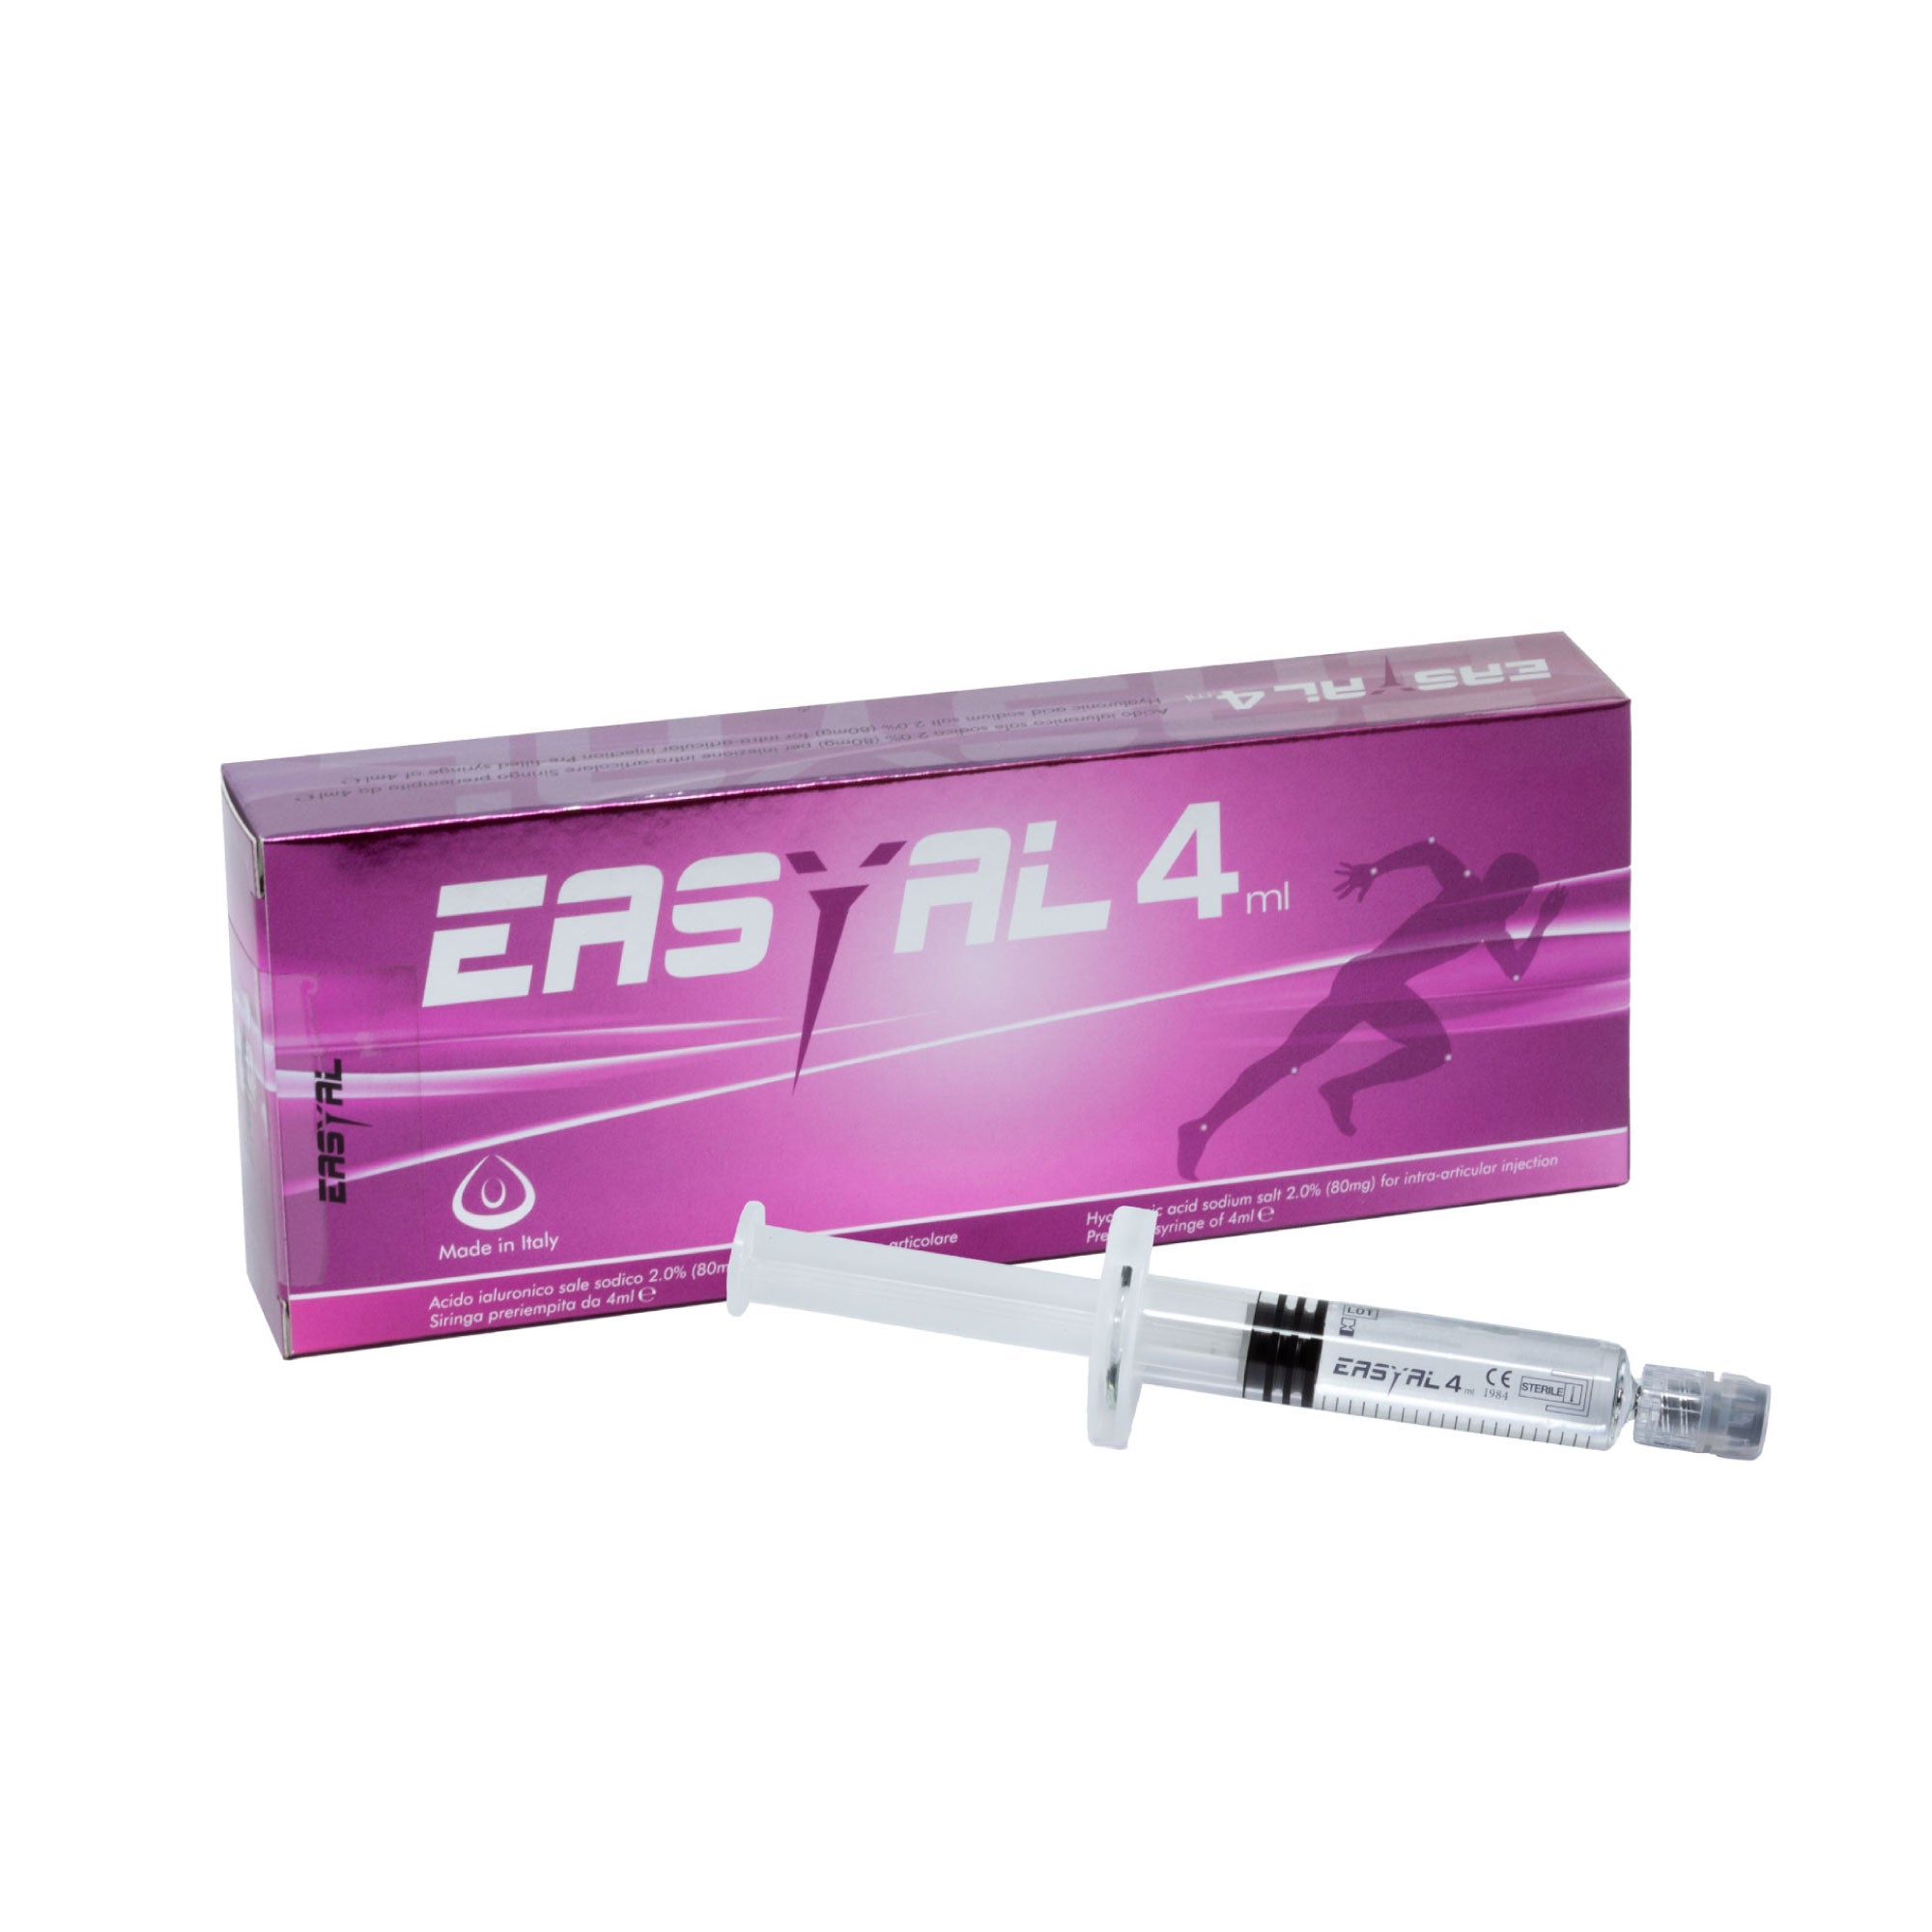 EASYAL 4 ml – Hyaluronsäuresalz – Behandlung von degenerativen/entzündlichen Gelenkerkrankungen